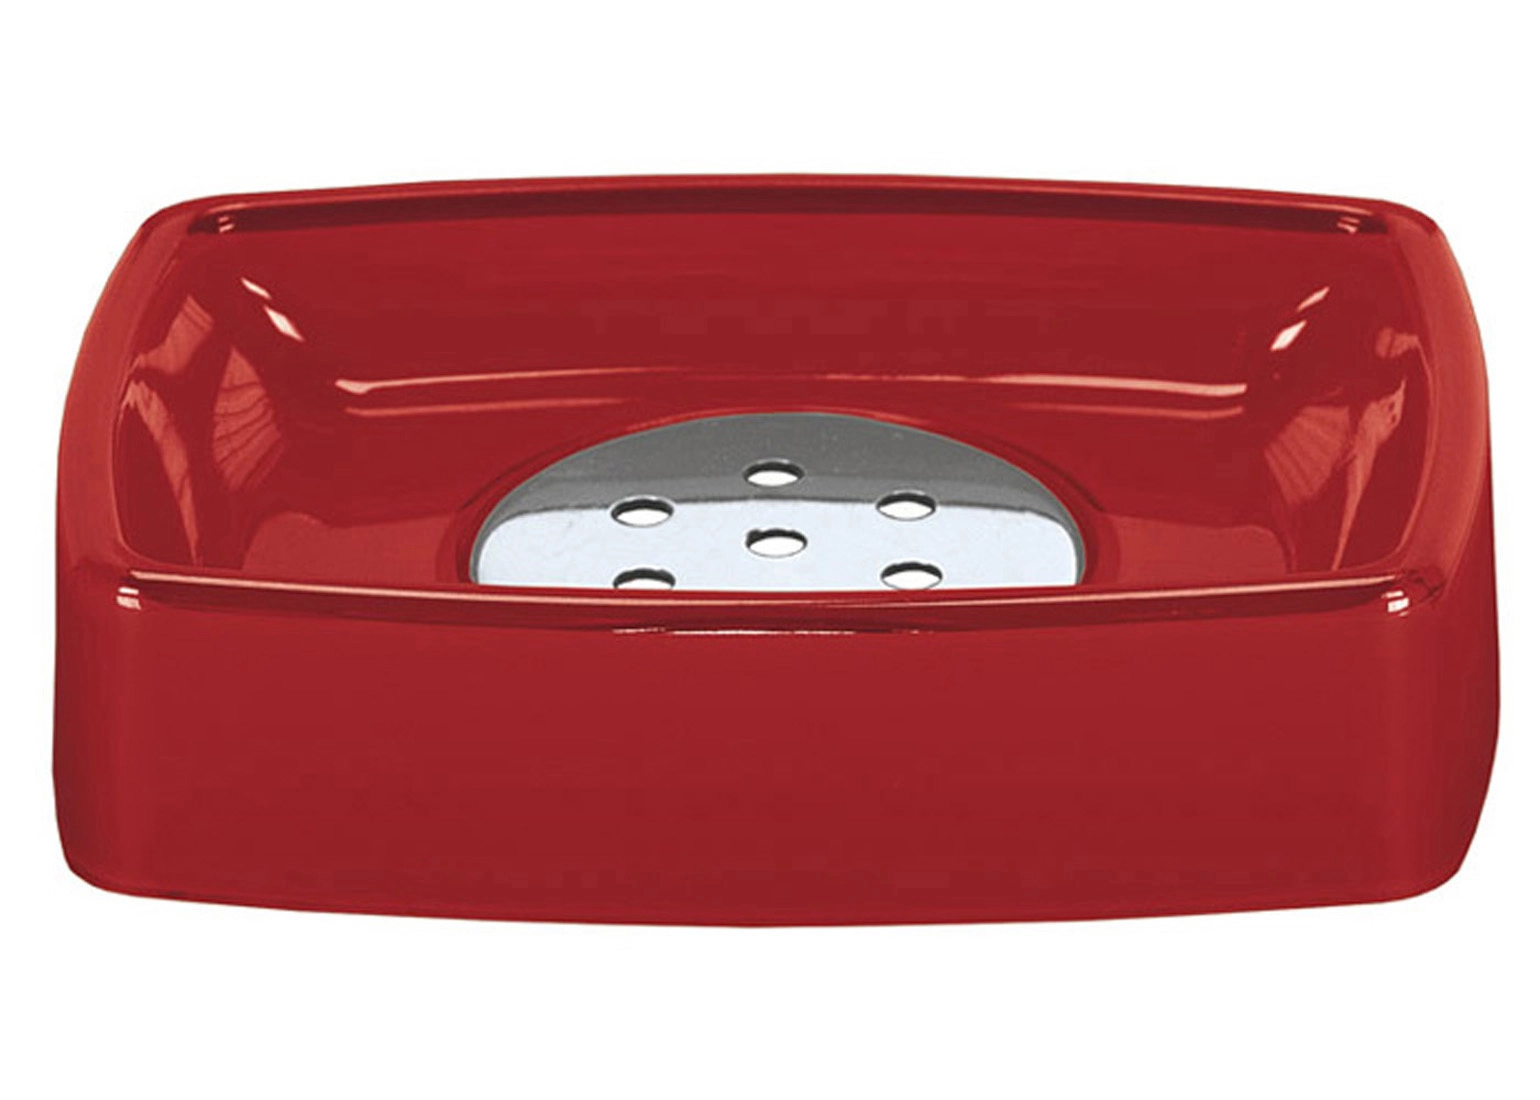 Rote Seifenschale von Kleine Wolke mit herausnehmbarer Metallablage, rechteckig und modern designt.